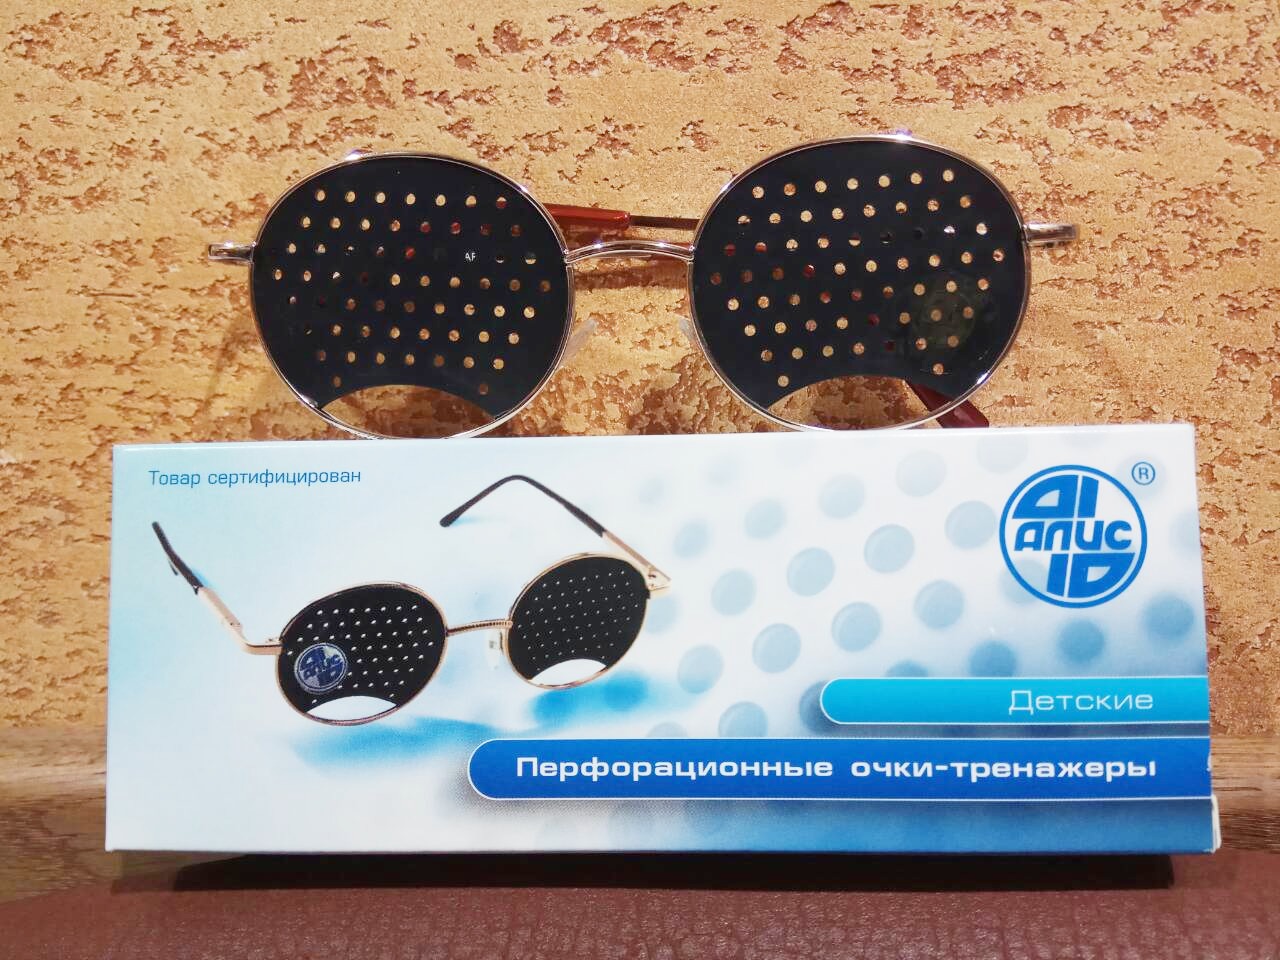 Очки тренажеры для улучшения зрения Федоровские - ДЕТСКИЕ, качество Алис - 96